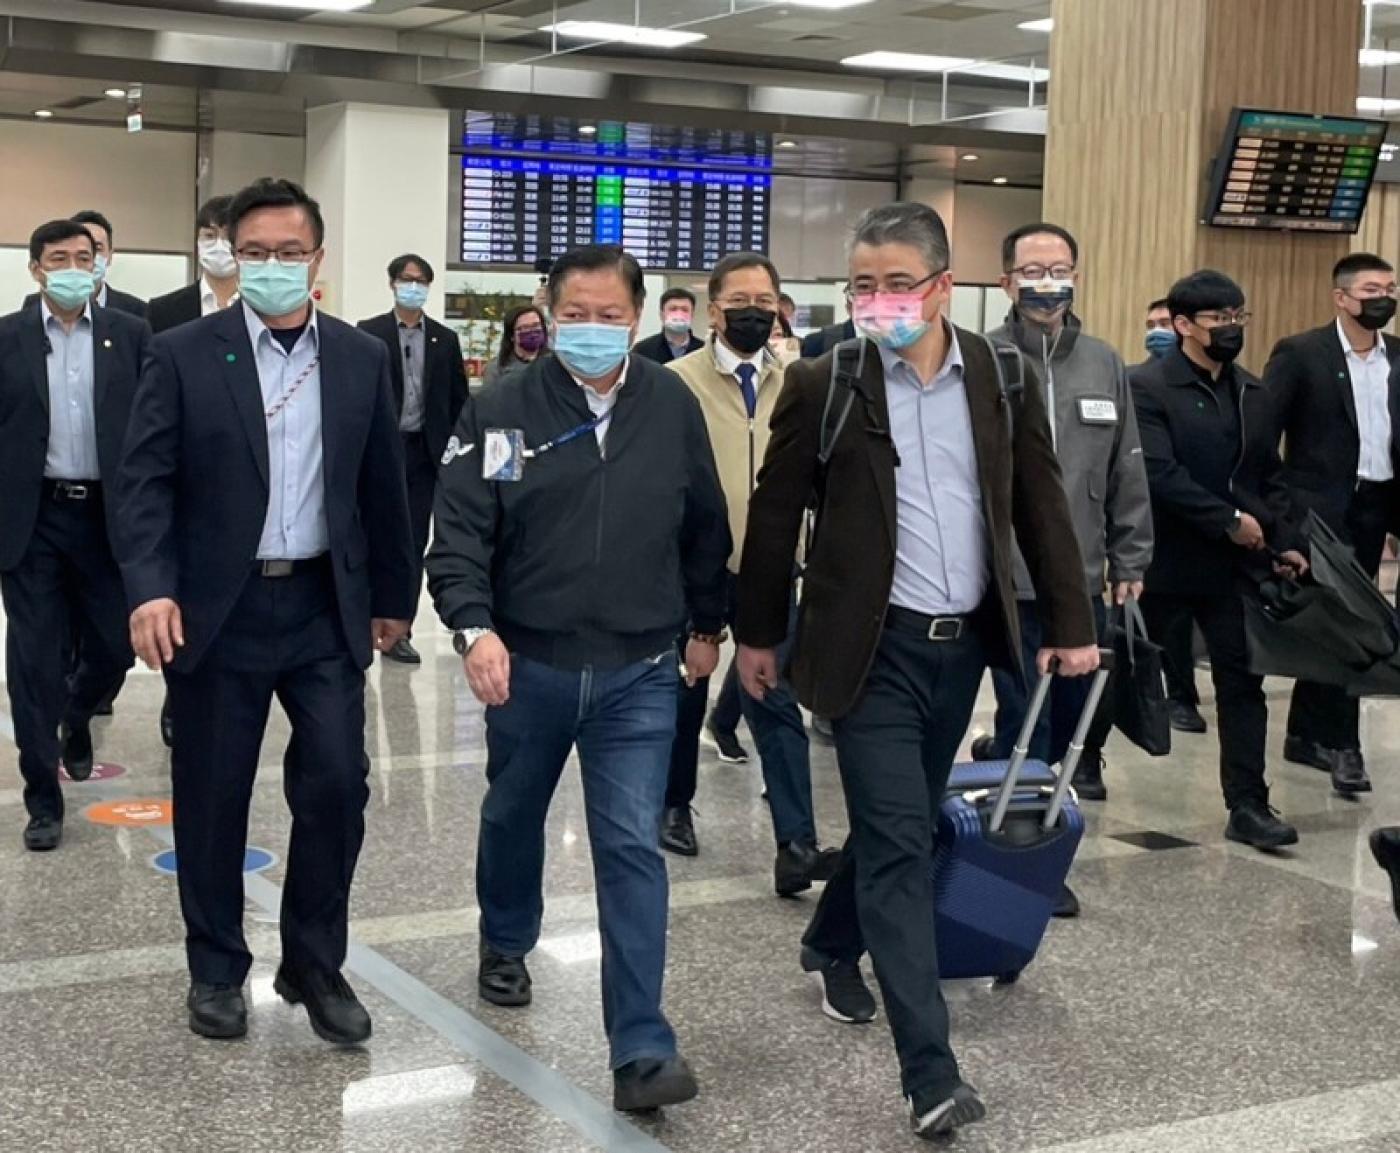 上海市台辦副主任李驍東（拉行李者）一行18日中午抵達松山機場。中央社